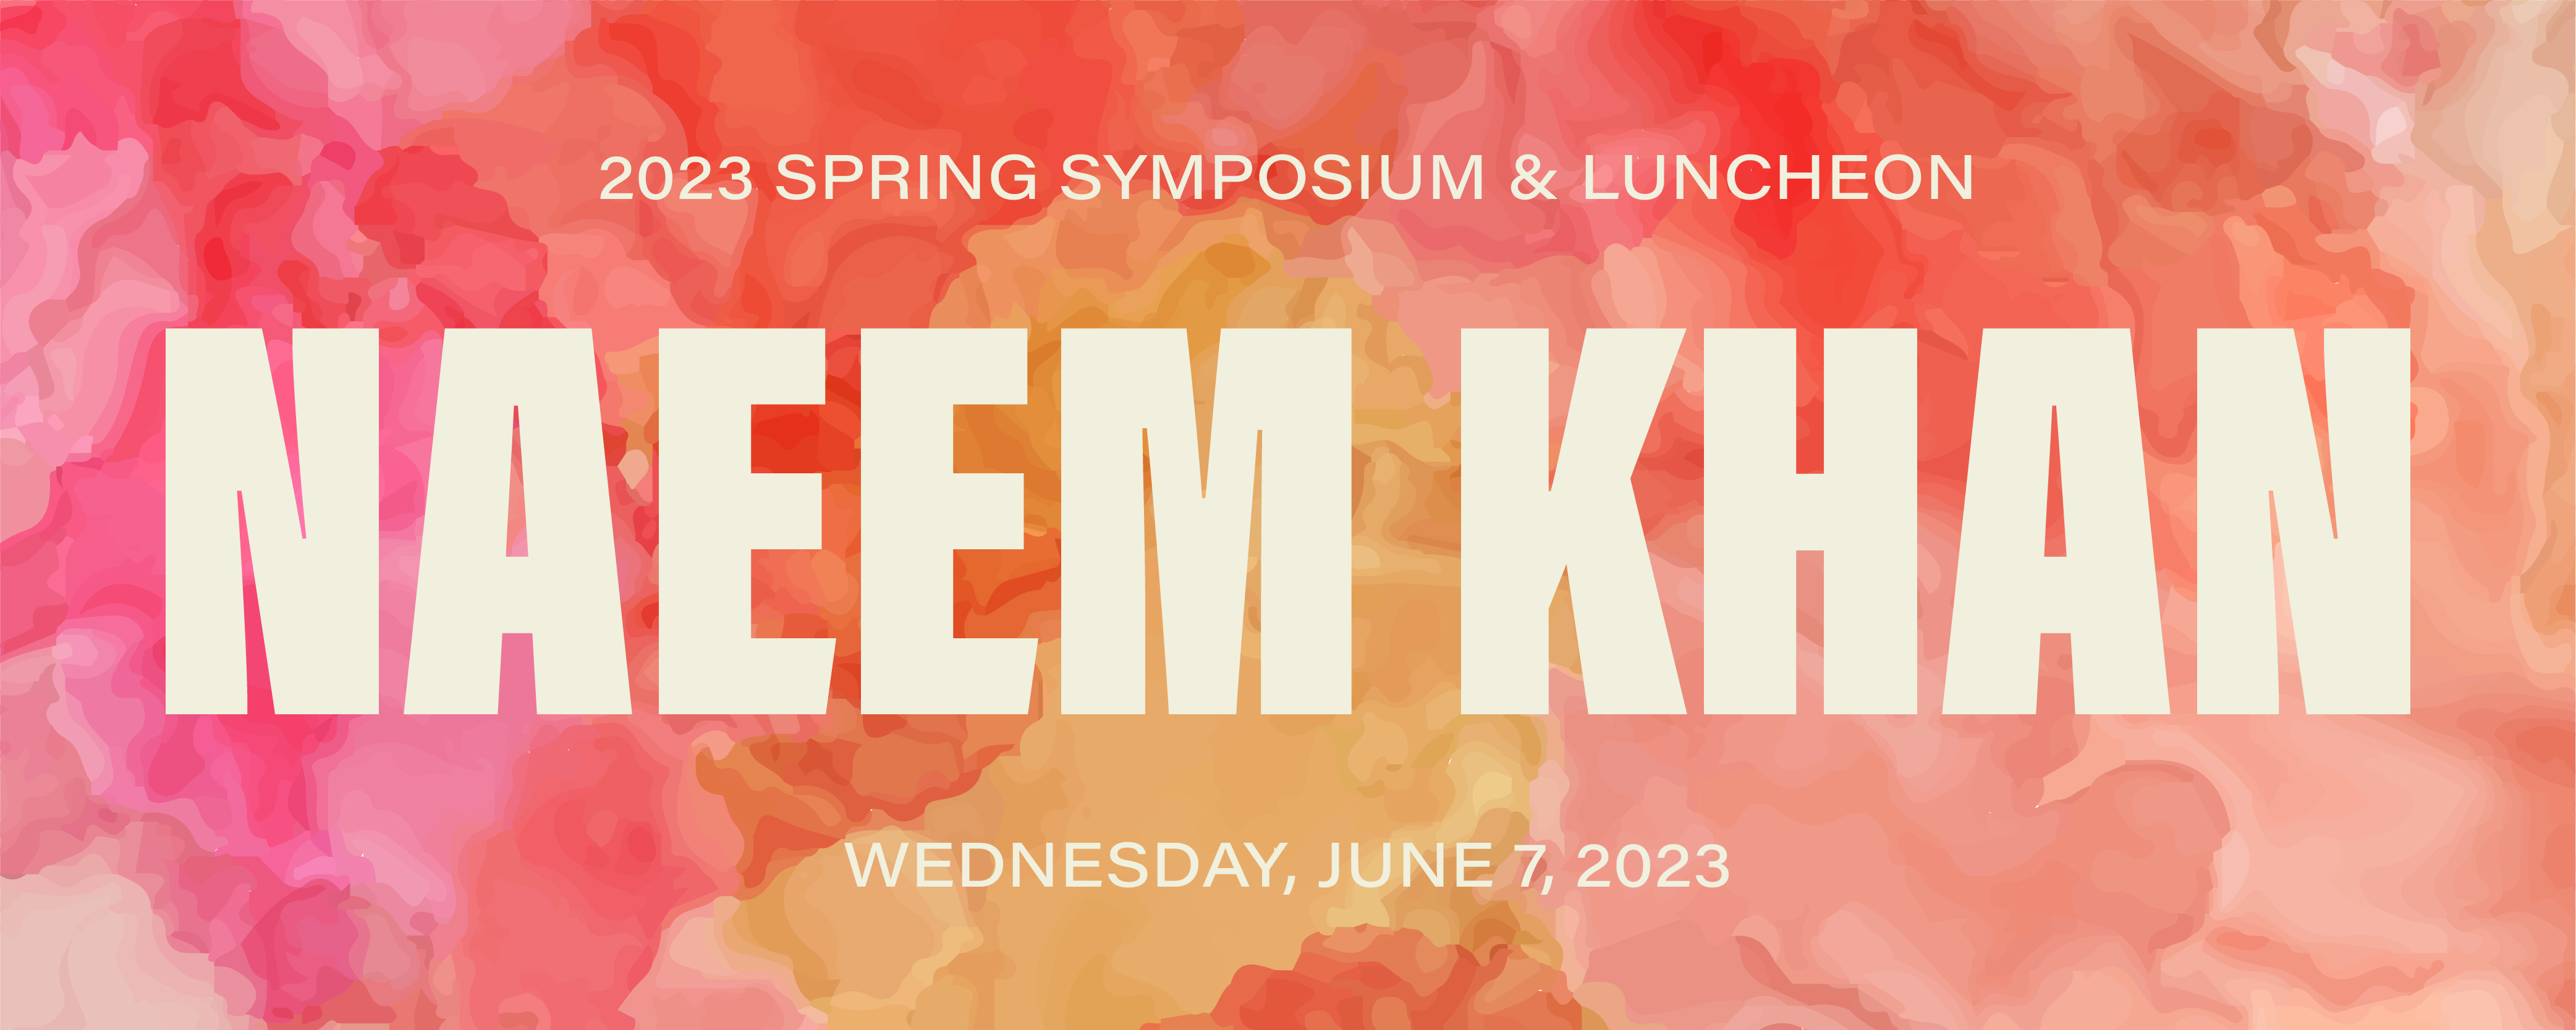 Simposio y almuerzo de primavera de 2023 Naeem Khan